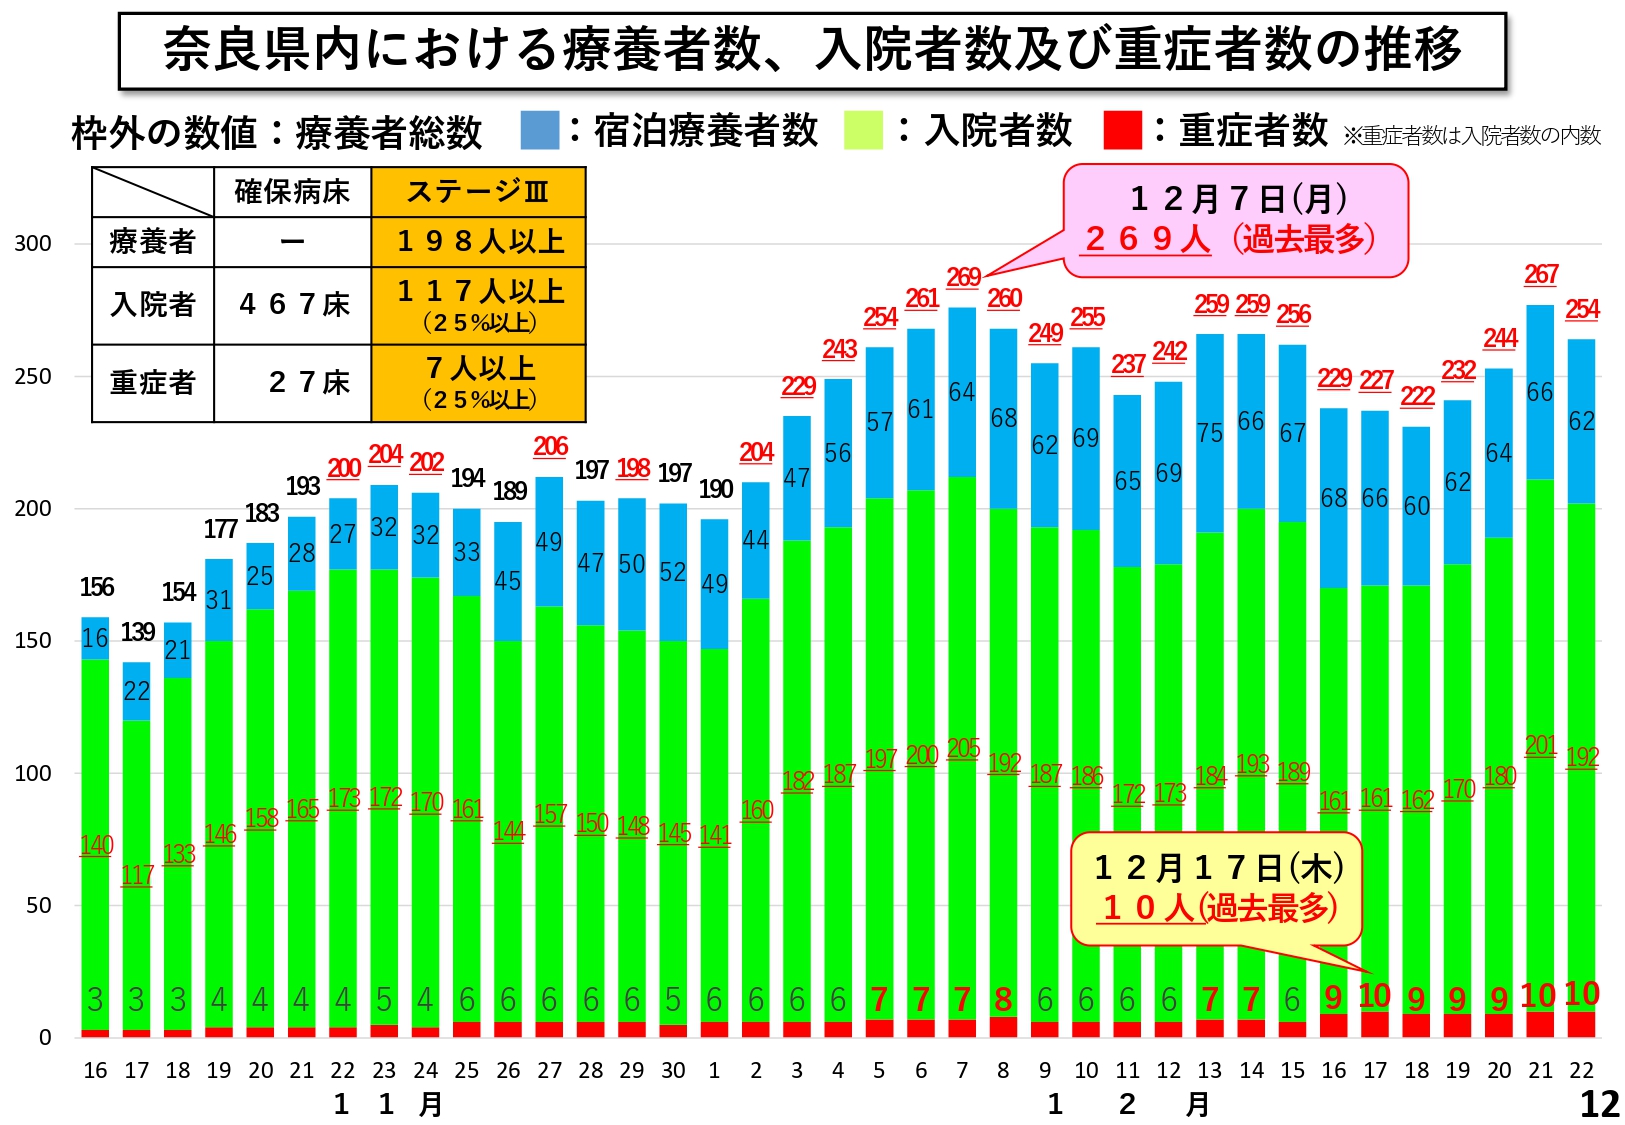 奈良県内における療養者数、入院者数及び重症者数の推移